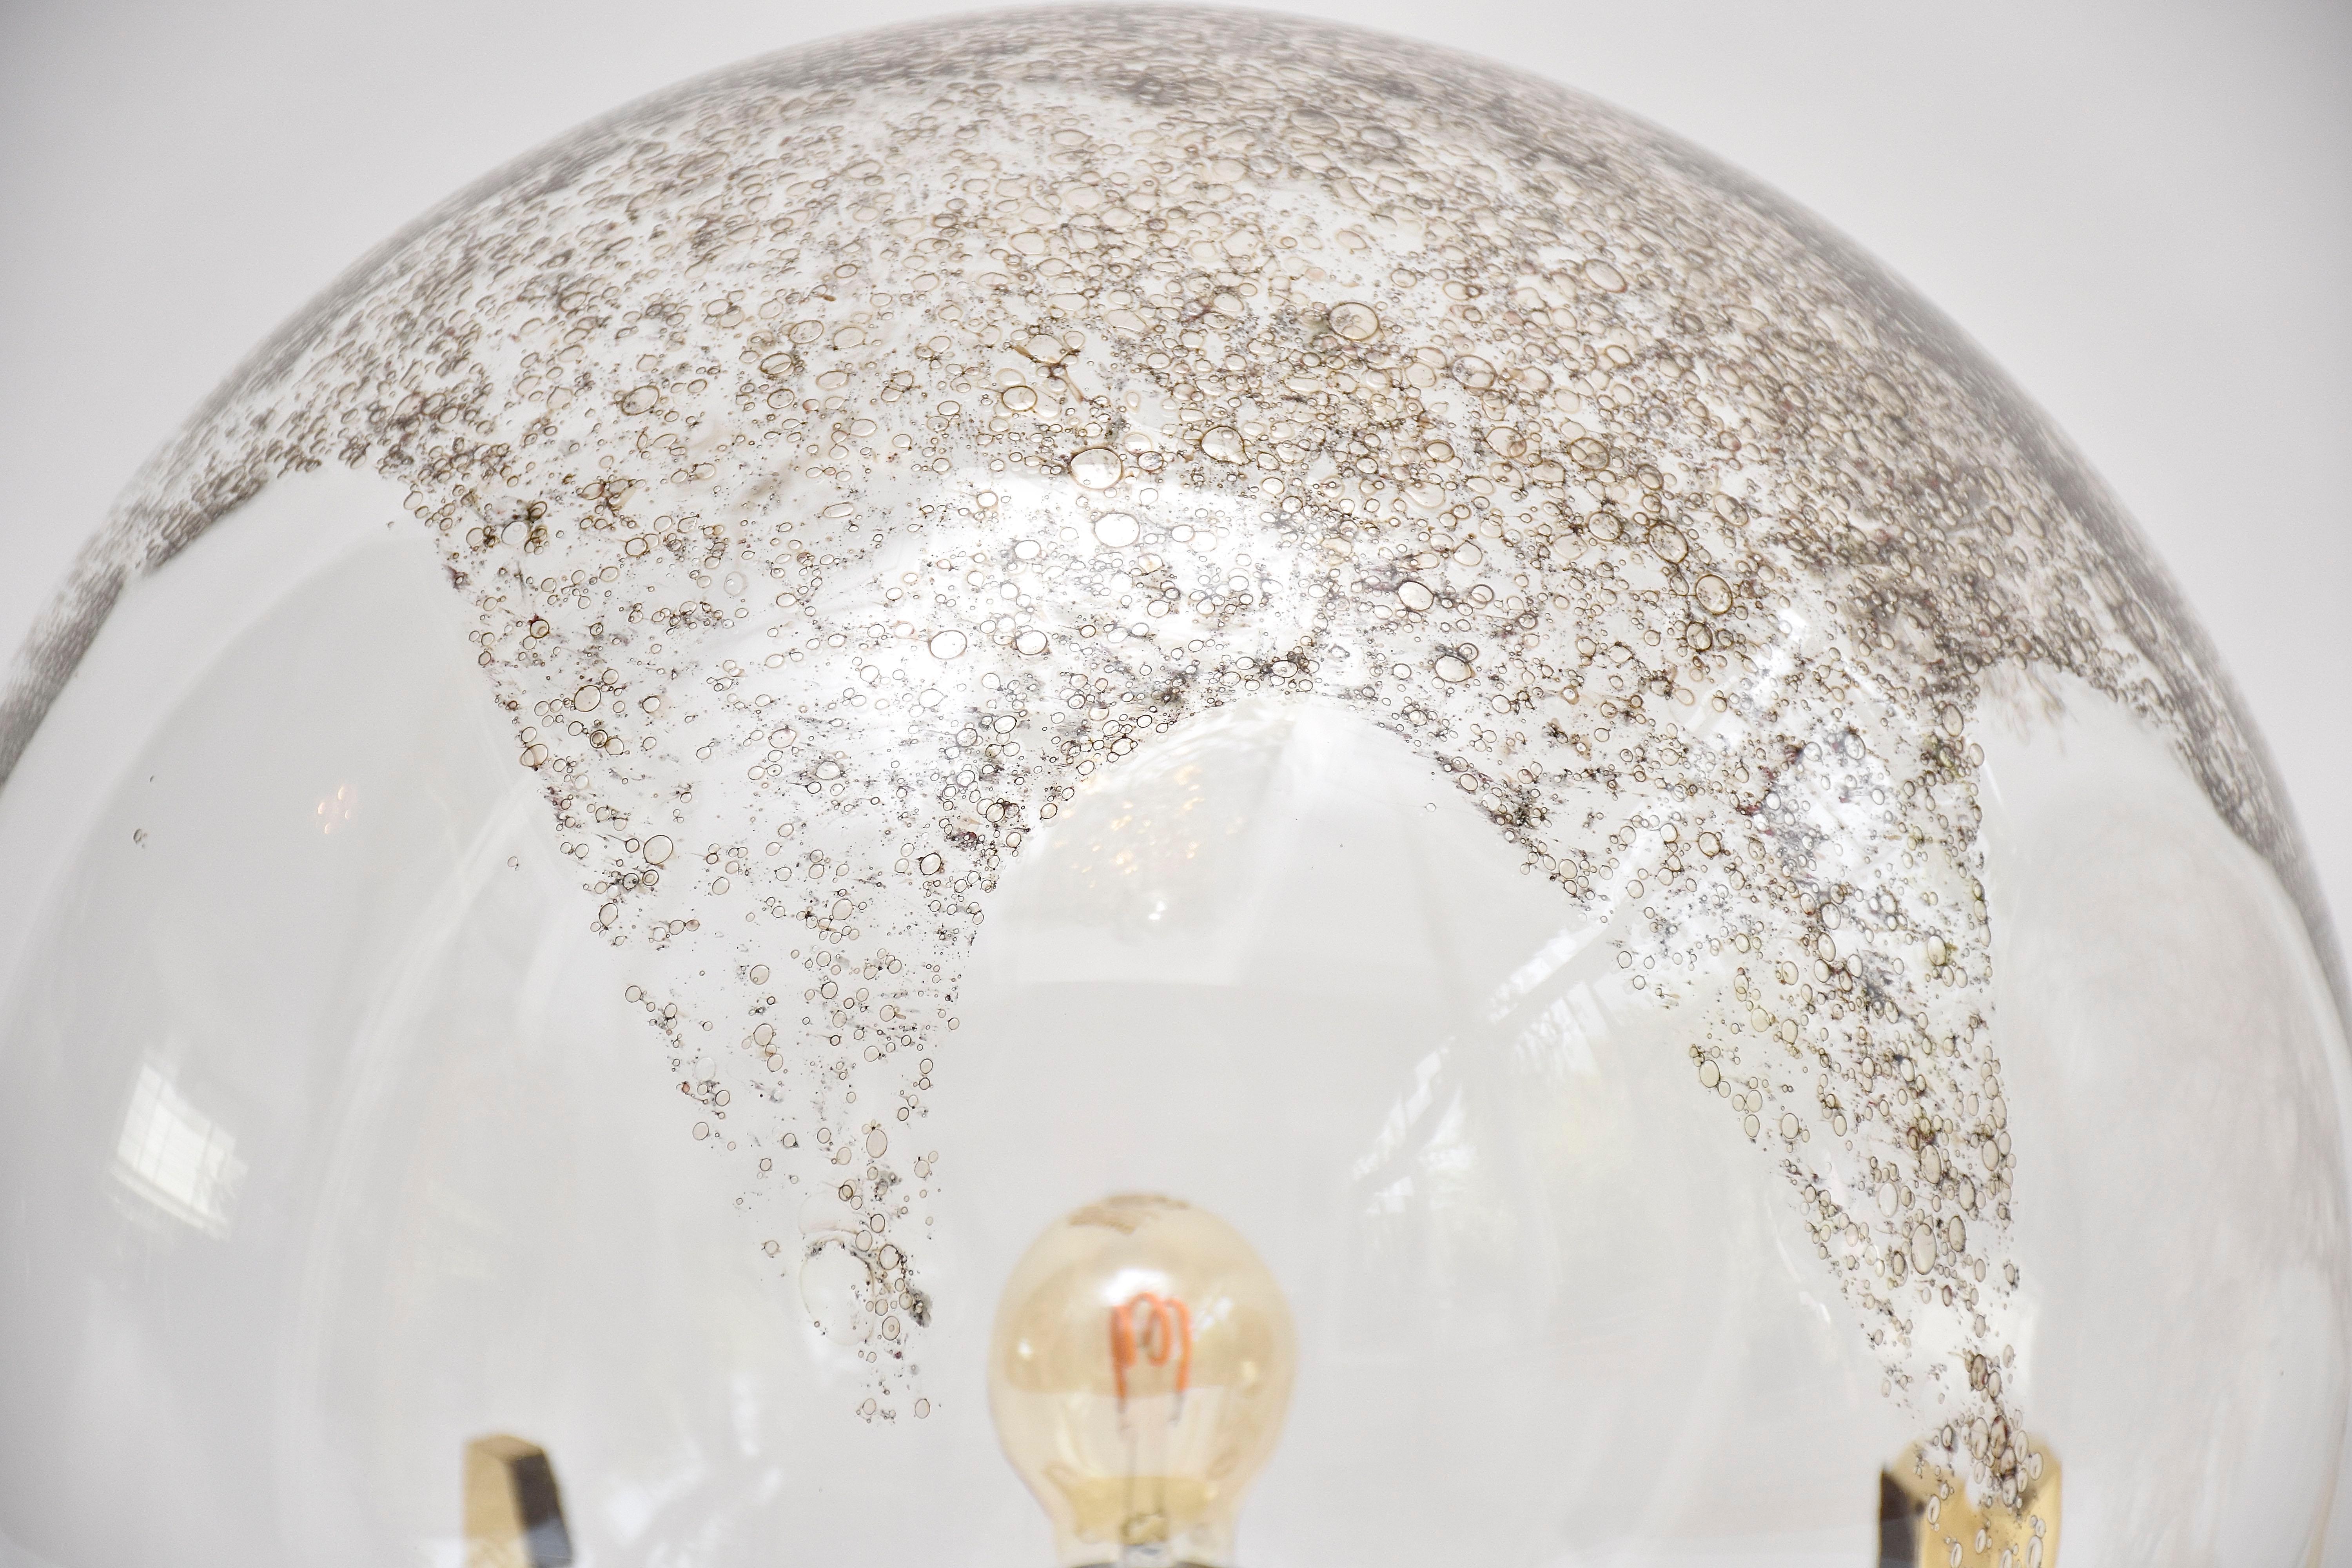 Eine sehr dekorative und zeitgenössische Steh- oder Tischleuchte von La murrina Murano.
Geblasene Glaskugel mit Eisenoxid im Inneren, was der Lampe ein spektakuläres Aussehen verleiht.
Rahmen aus poliertem Messing. 
Herkunftsort - Italien
Zeitraum-